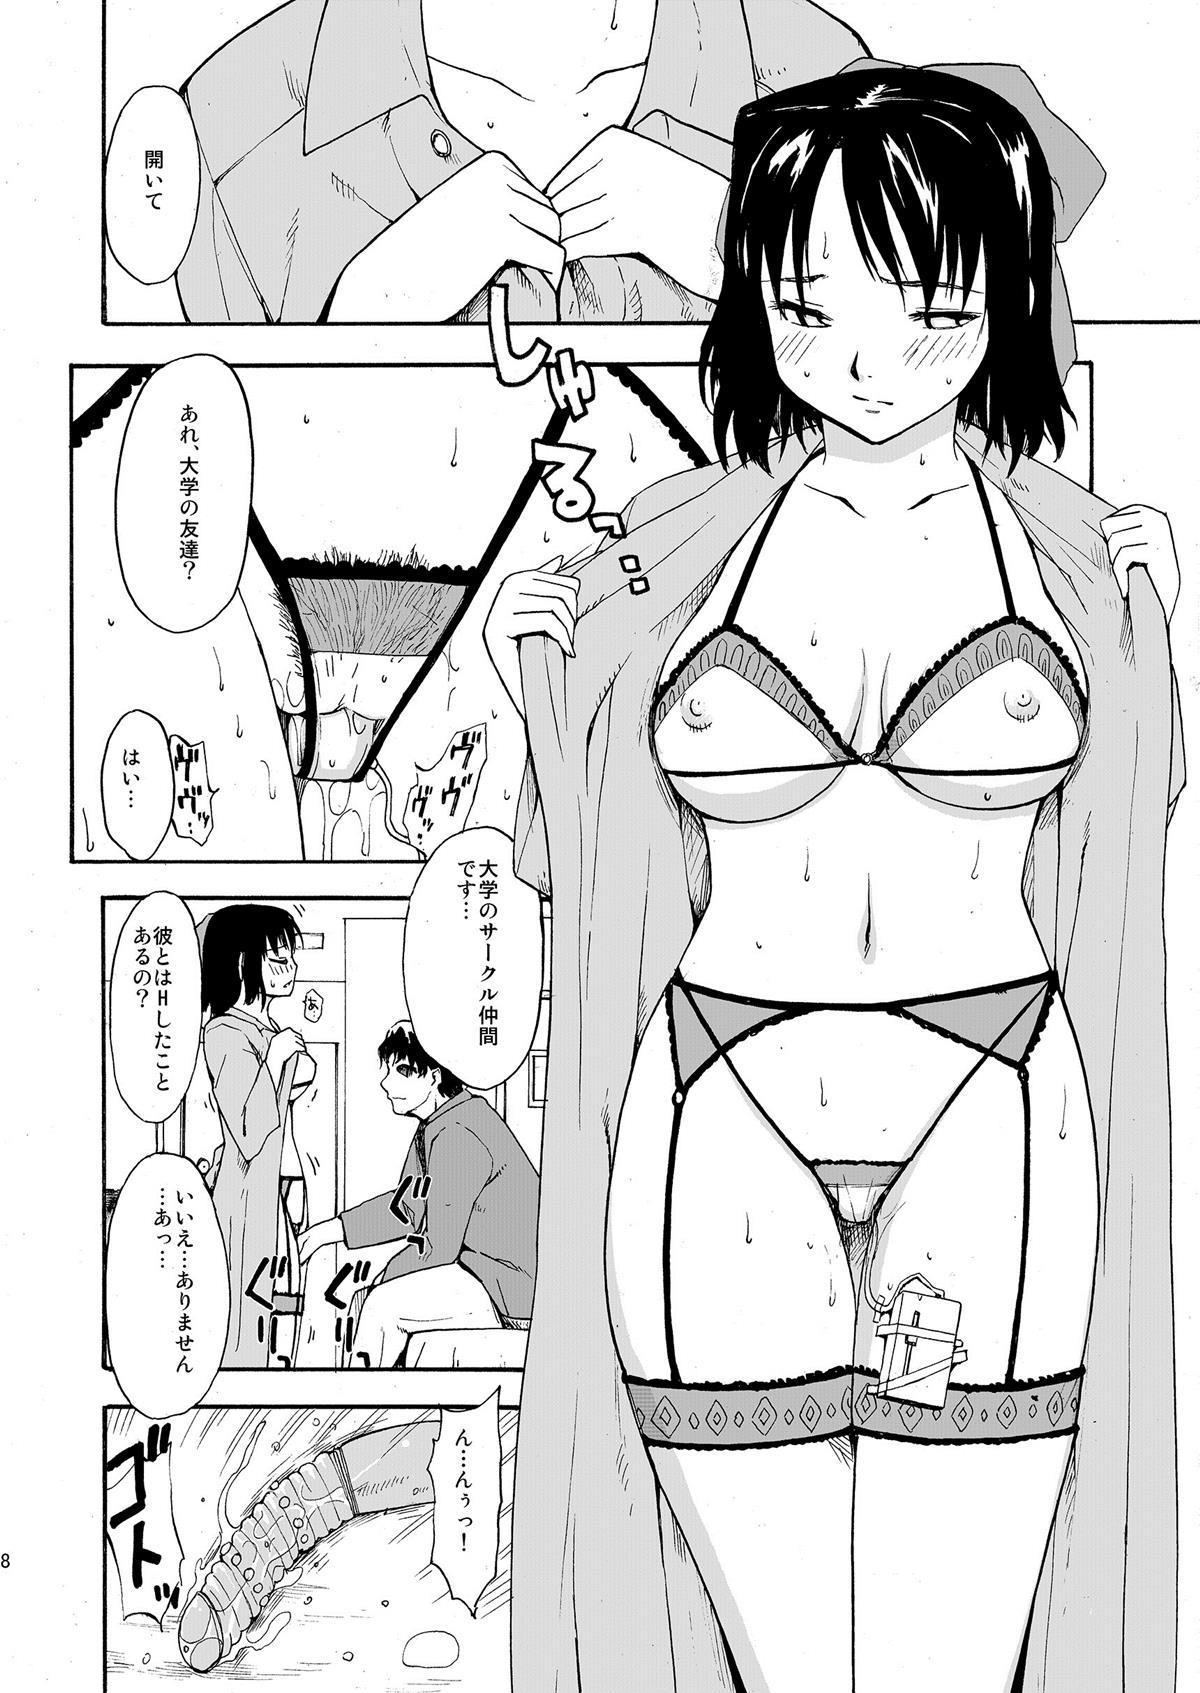 Escort [Paranoia Cat (Fujiwara Shunichi)] Akogare no Onna -Himitsu no Isshuukan- #1-3 Teensex - Page 8